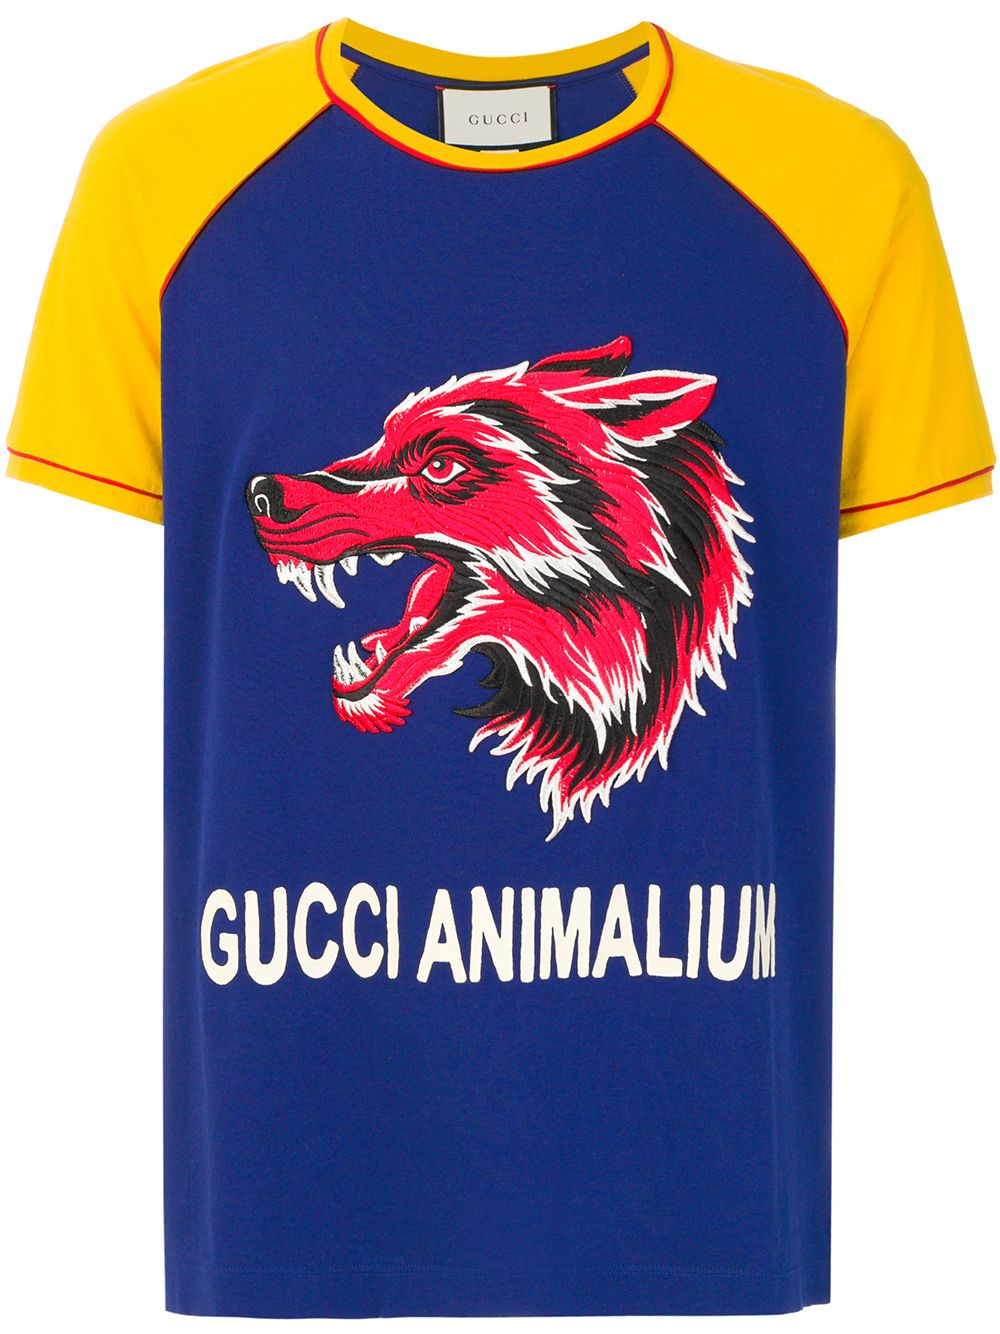 Gucci Animalium T-shirt - Farfetch